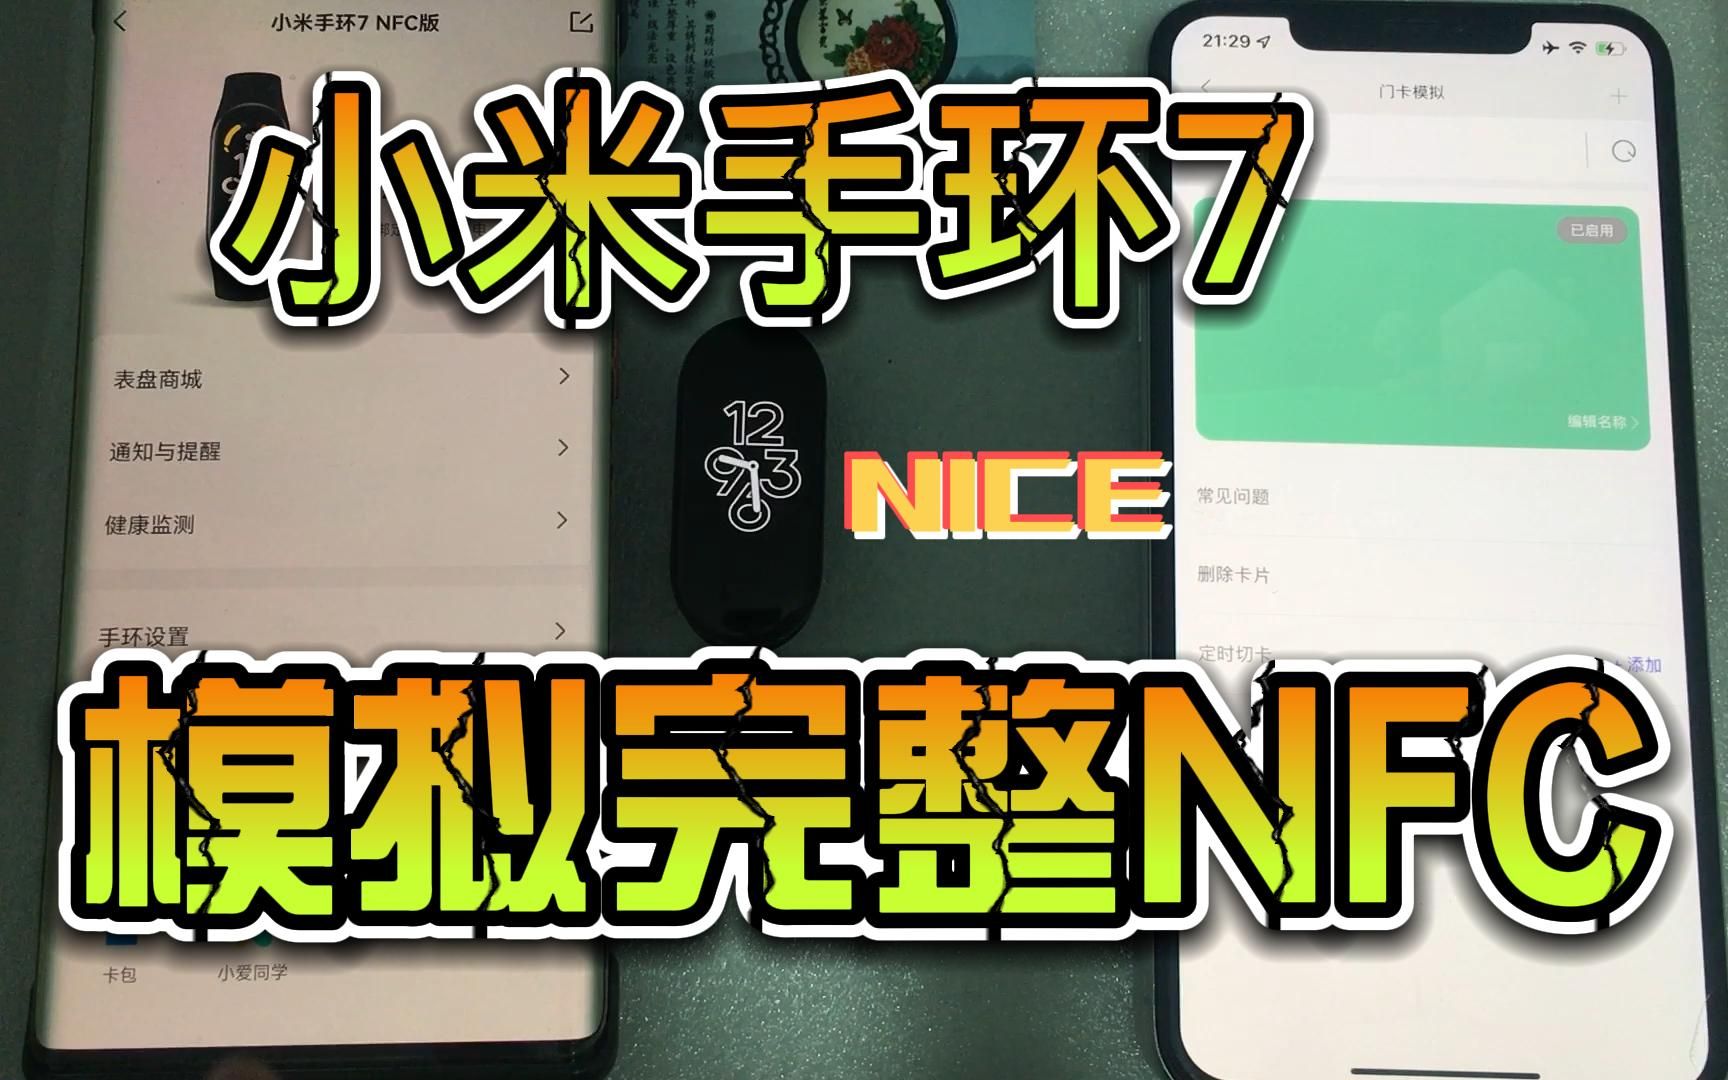 小米手环7 NFC 模拟完整NFC数据，我也没想到这一期视频这么长，有些地方讲得详细，别嫌我话多哦~